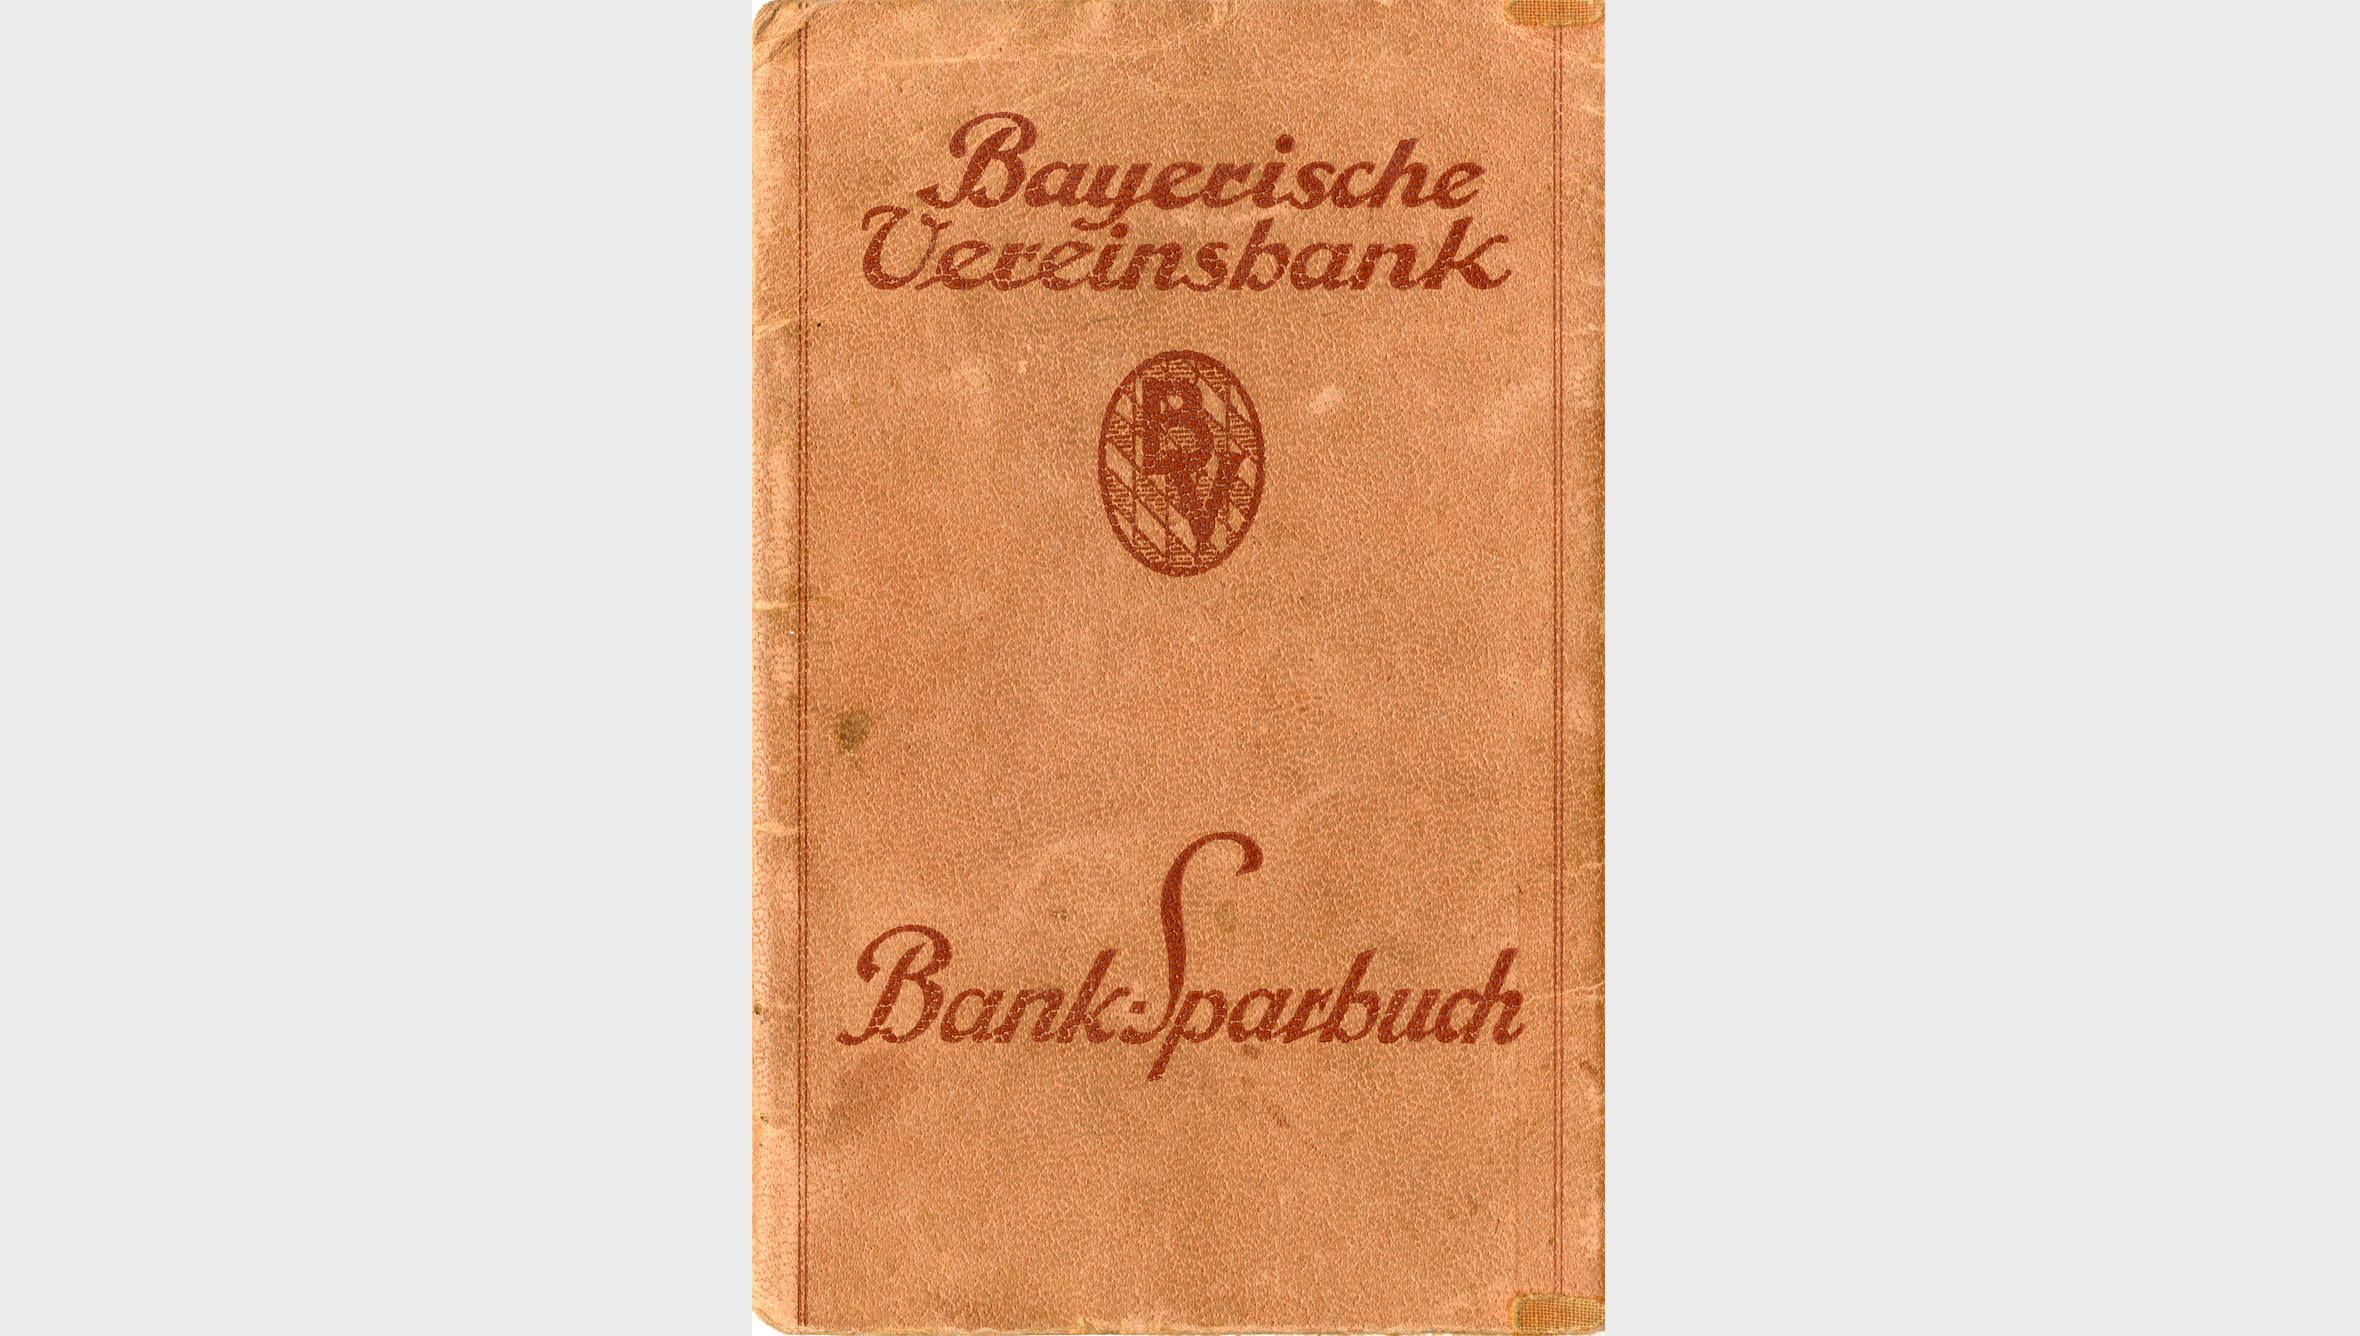 Die Bayerische Vereinsbank begann 1925 „Bar-Depositen ohne Überweisungsverkehr“ anzunehmen, d. h., sie bot ihren Kunden ein Sparbuch an. Kriegsbedingt wuchsen seit 1939 die Spareinlagen.